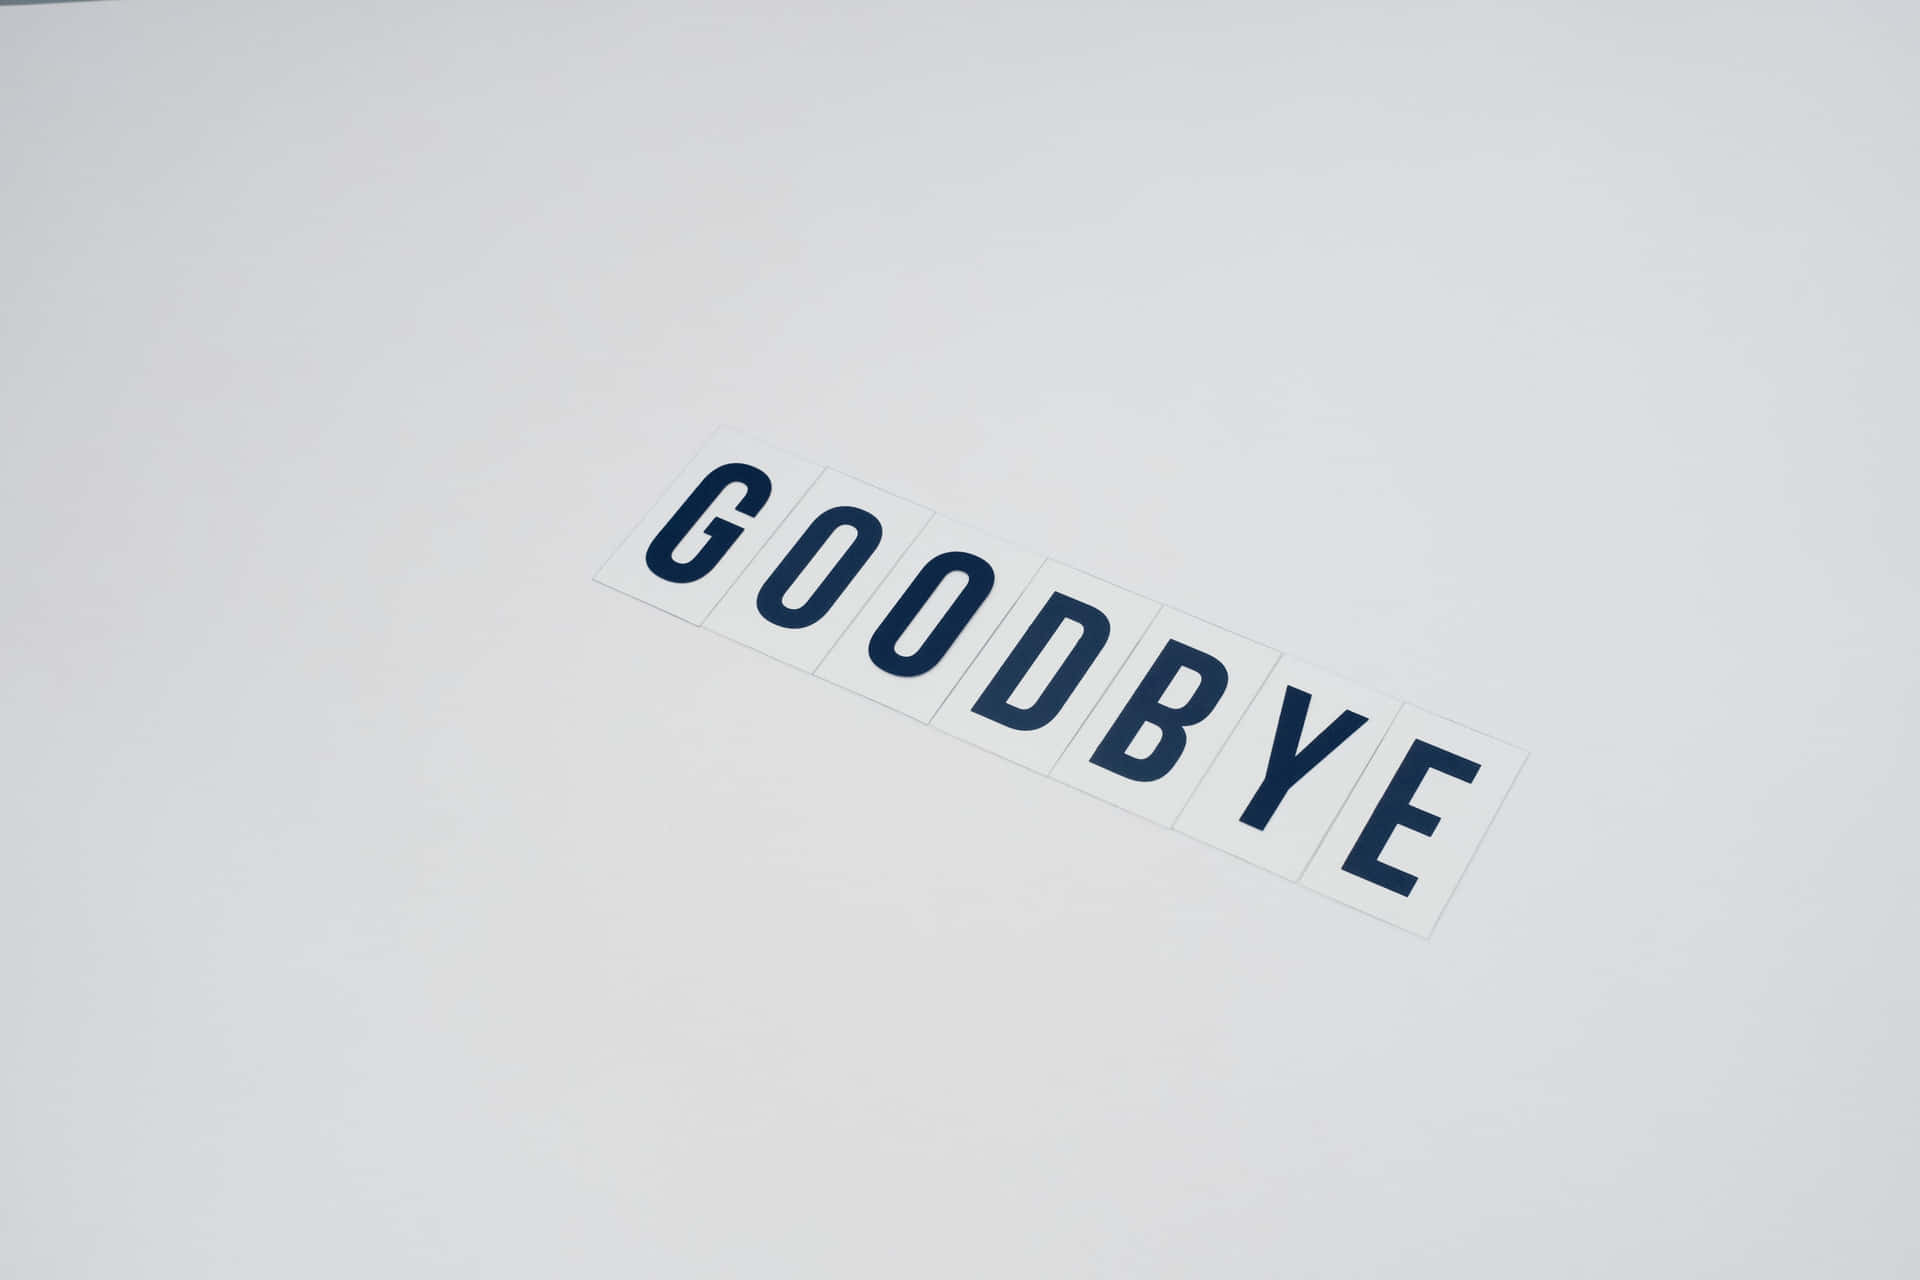 Saying "Goodbye"